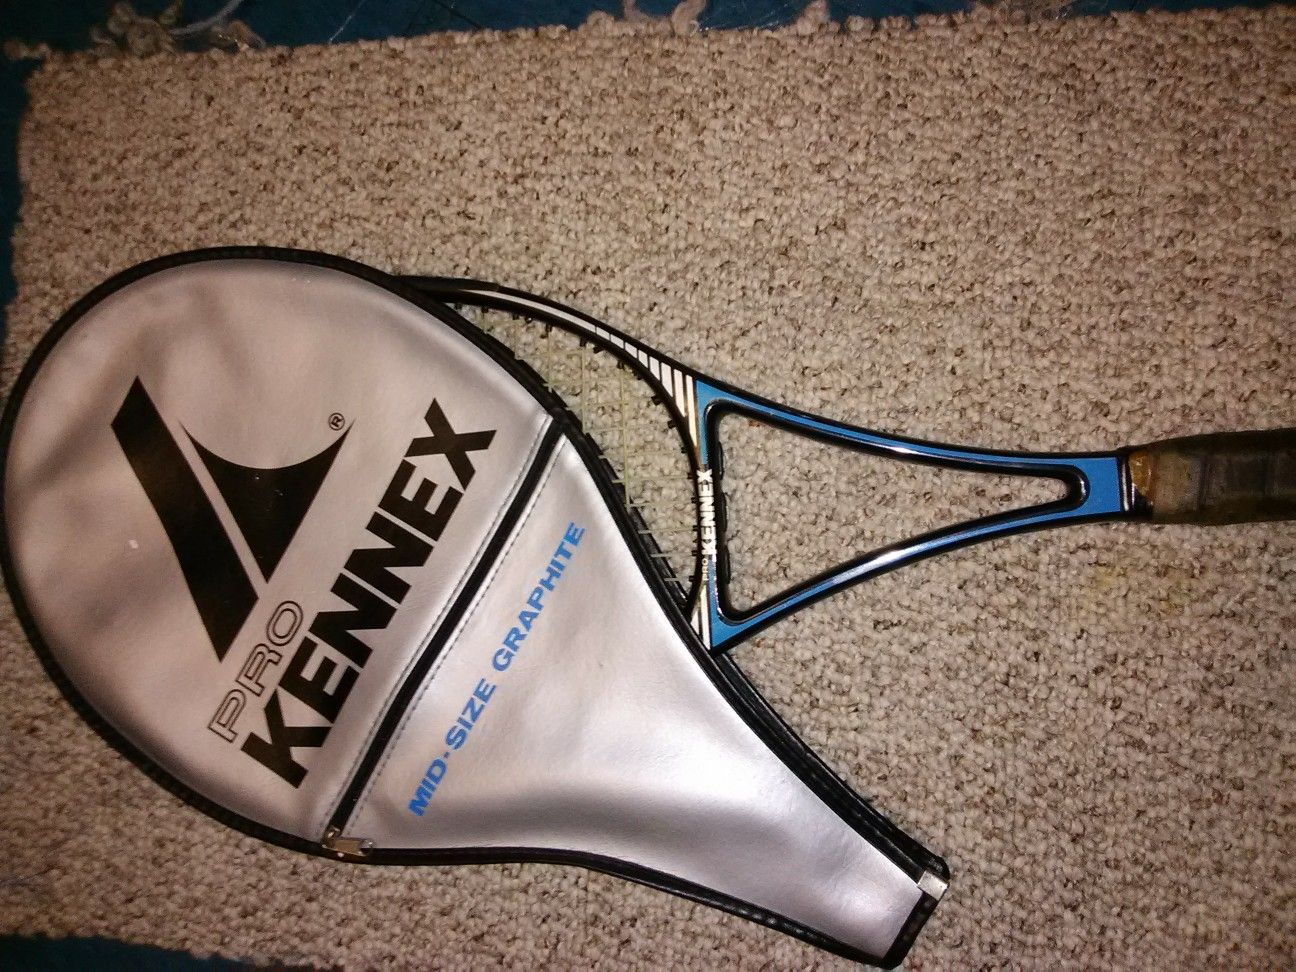 Kennex tennis racket